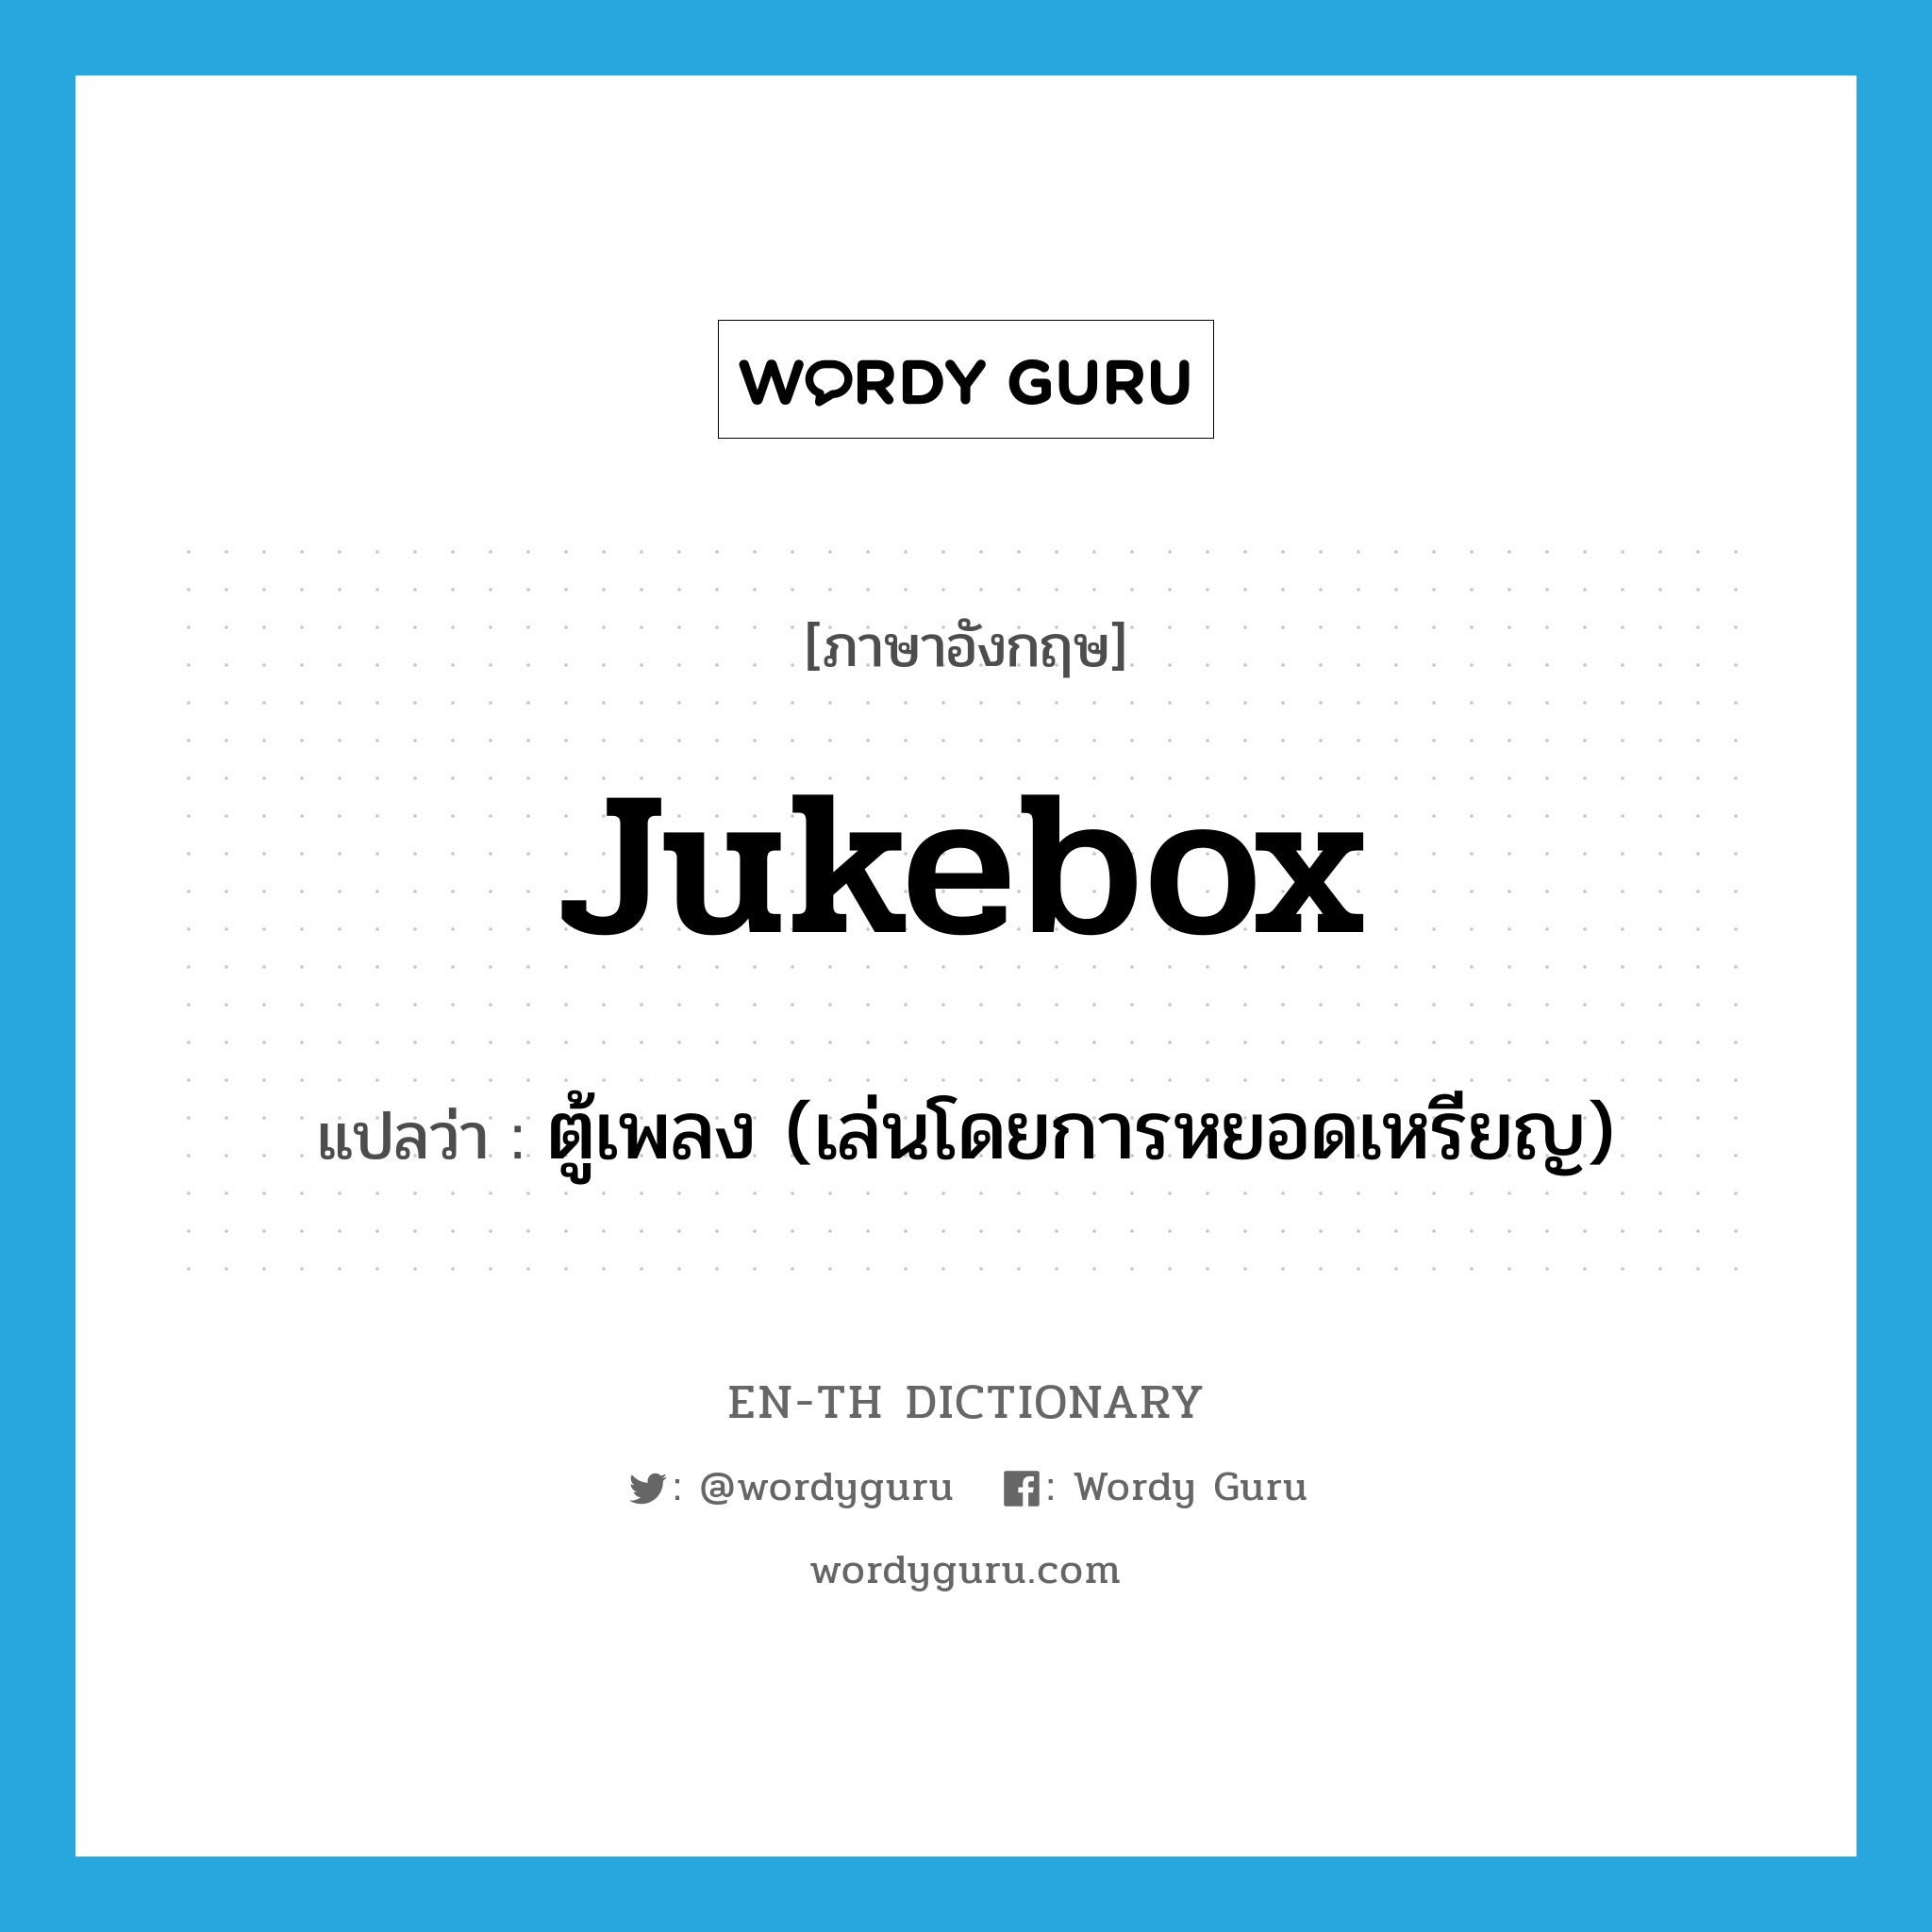 jukebox แปลว่า?, คำศัพท์ภาษาอังกฤษ jukebox แปลว่า ตู้เพลง (เล่นโดยการหยอดเหรียญ) ประเภท N หมวด N